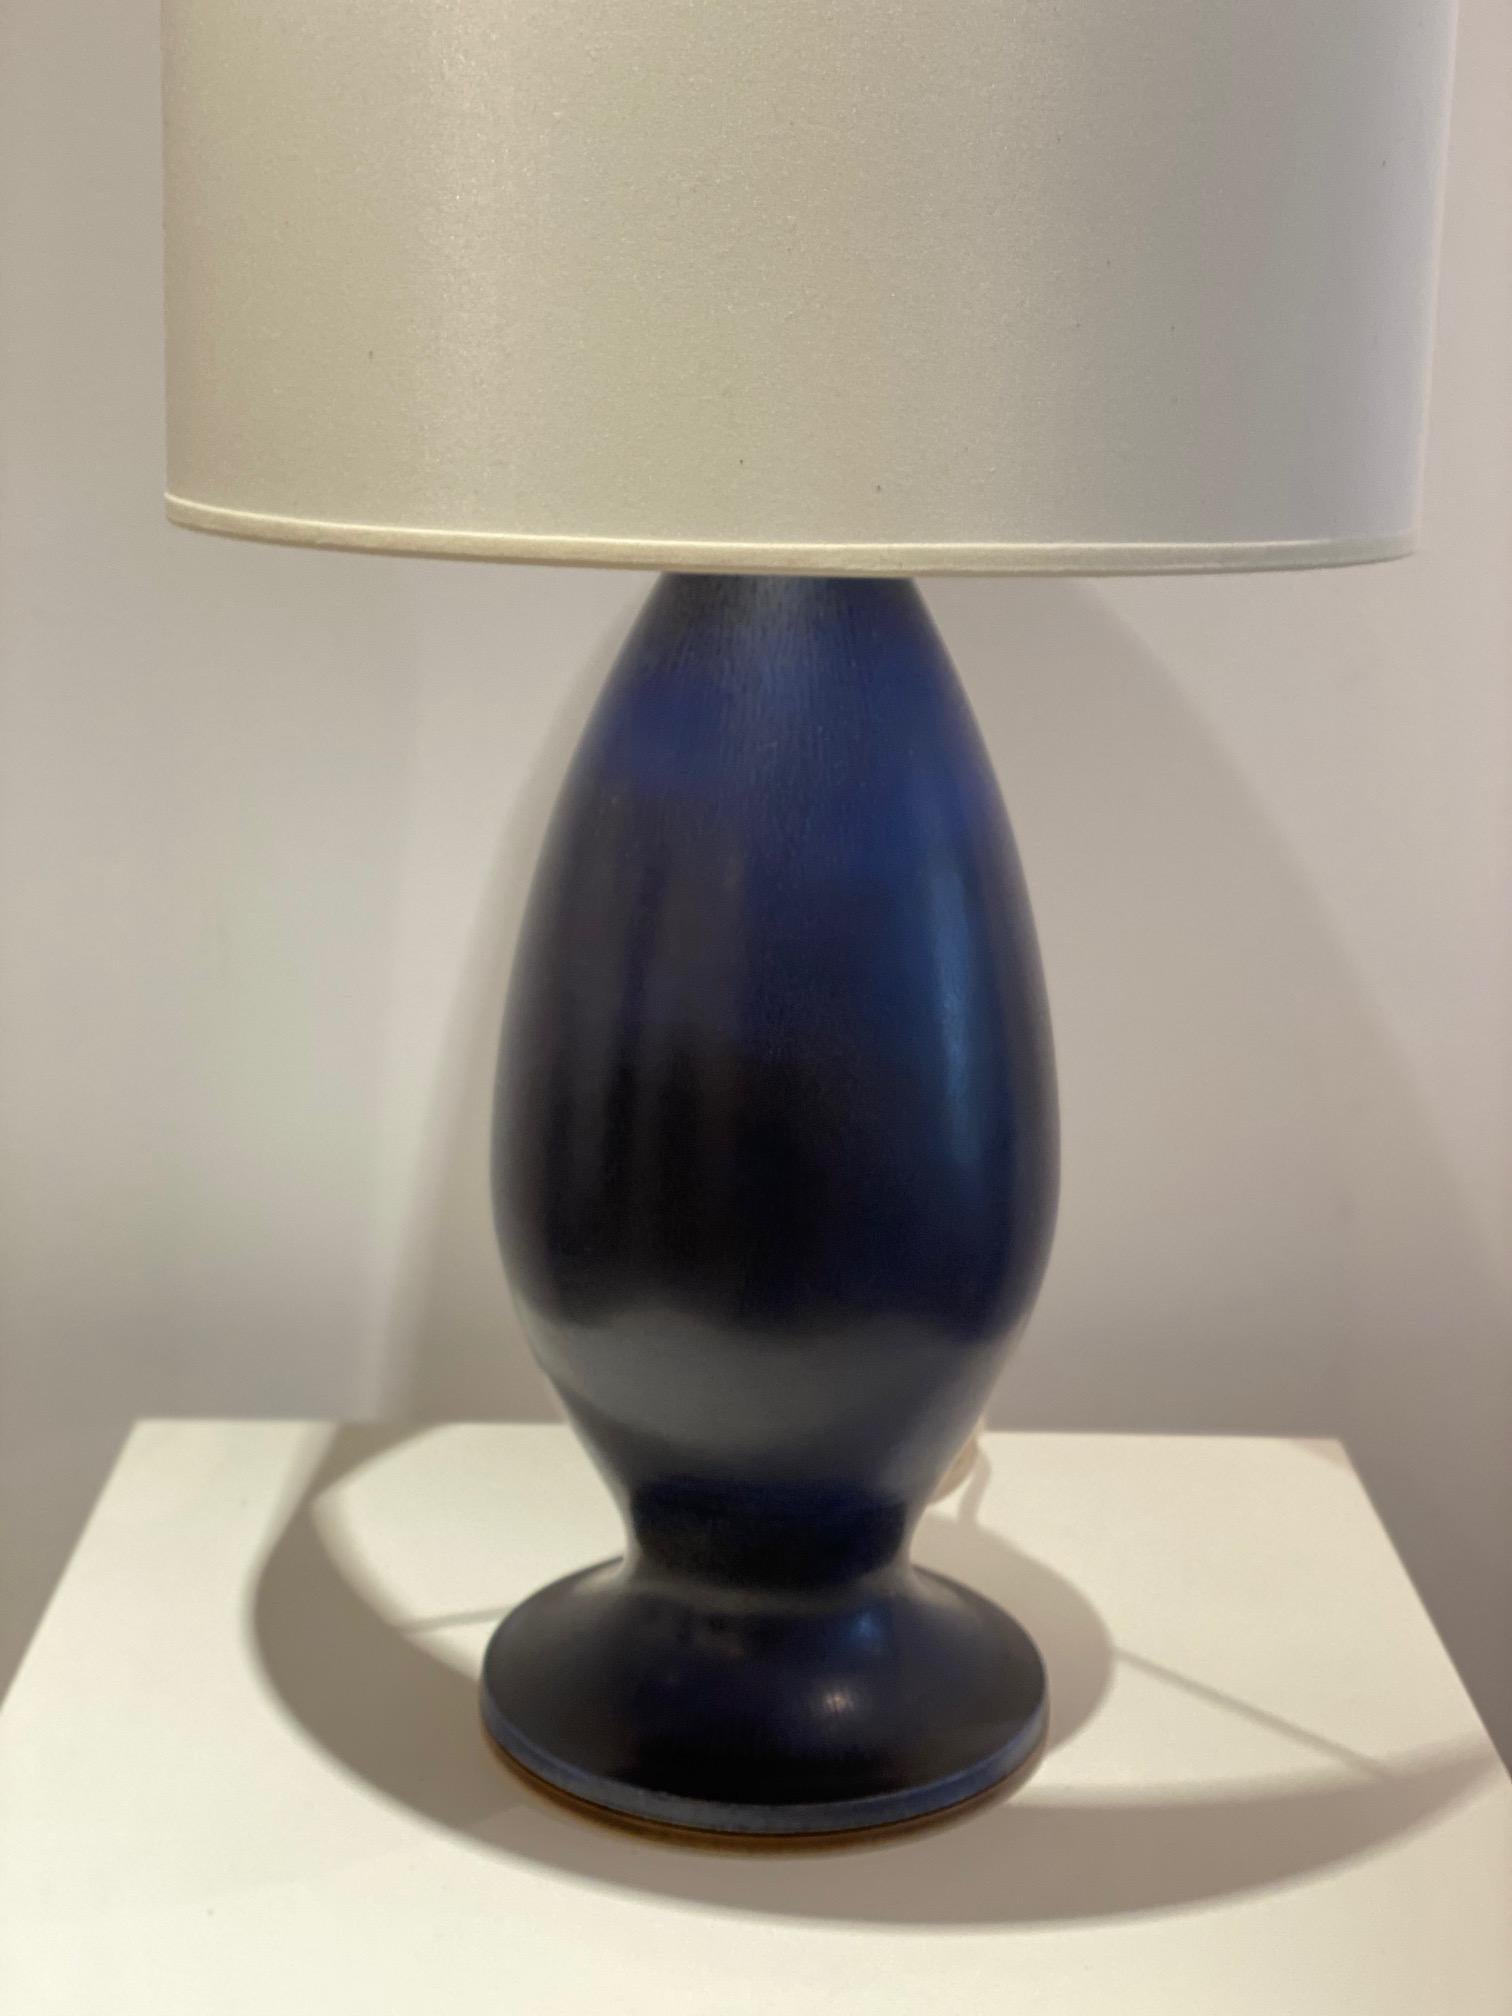 Berndt Friberg (1899-1988), Gustavsberg, Suède
Grand pied de lampe en émail bleu foncé HaresFur Signé de la main de l'atelier et marqué en dessous 
H 34 cm, la mesure de la hauteur concerne uniquement la sculpture en céramique (sans le système